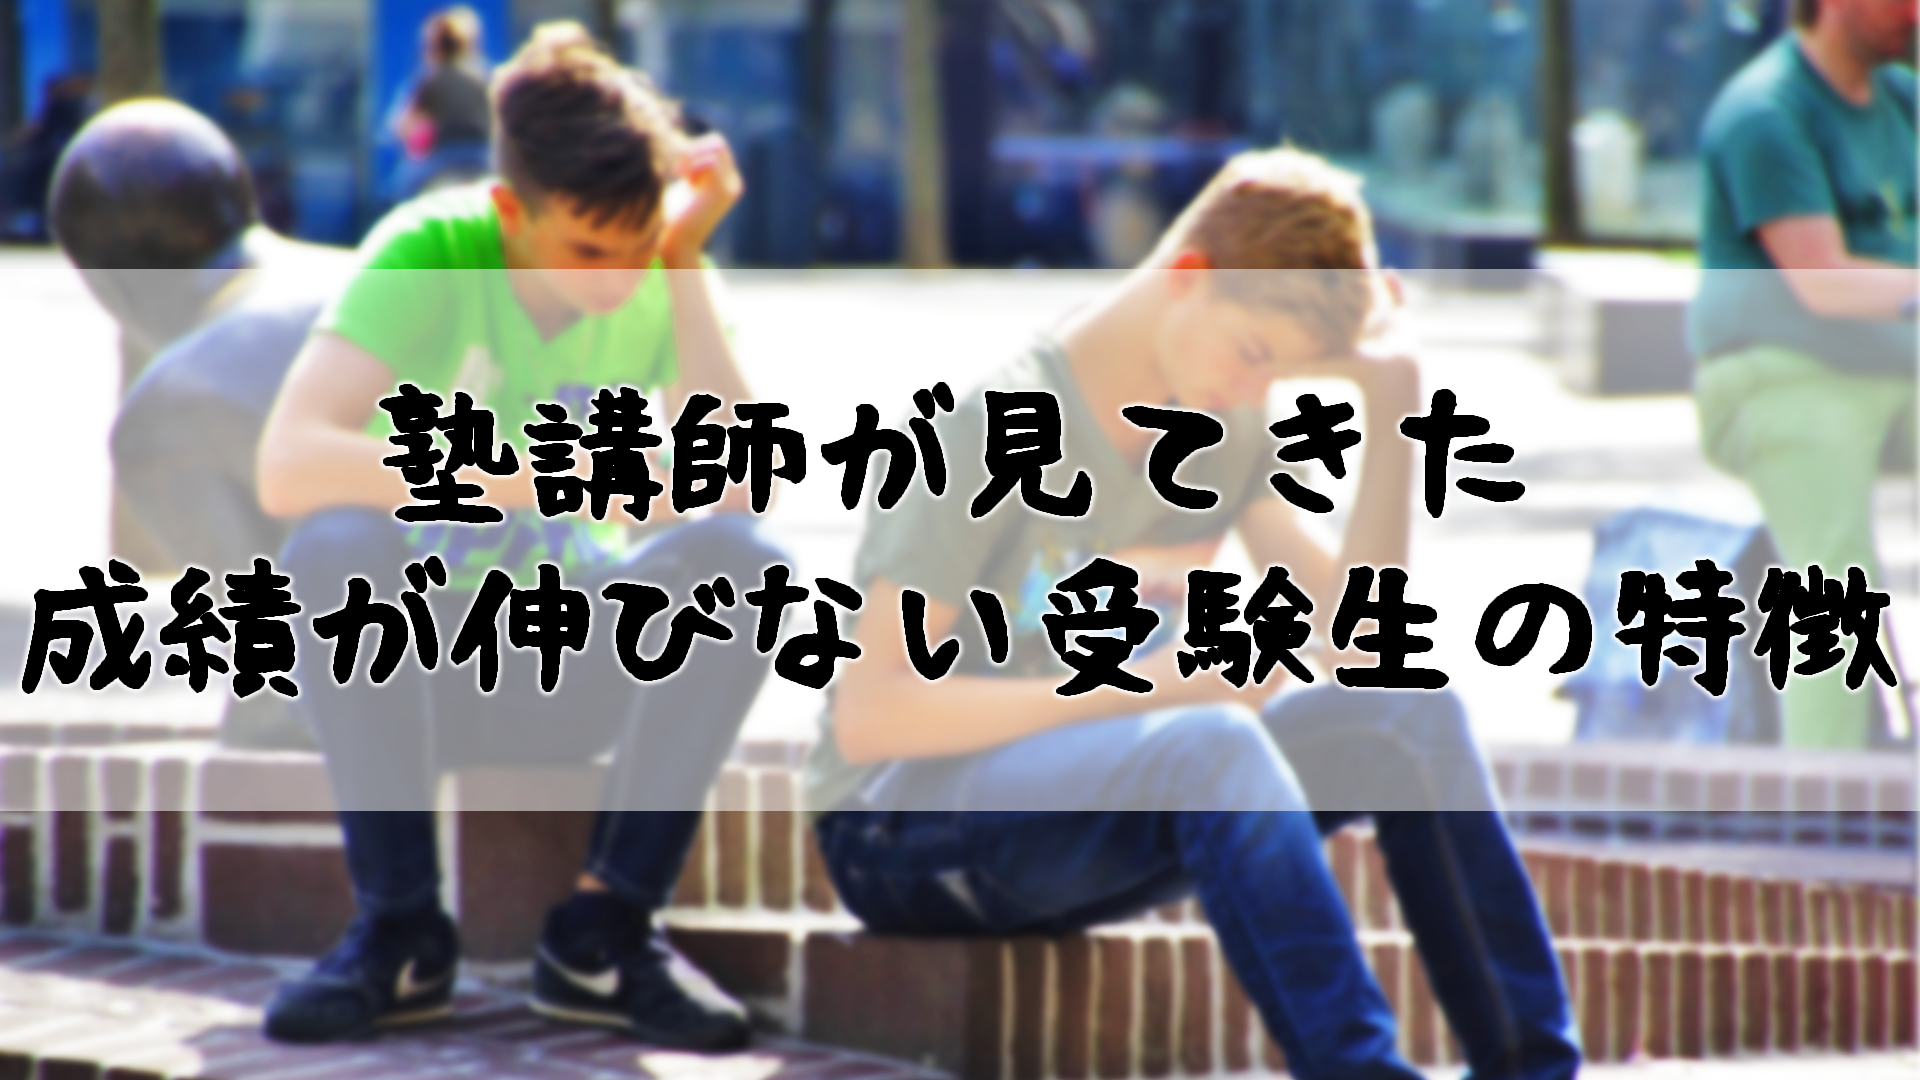 おすすめ5選 広島の中学受験 塾 の選び方 中学受験予定の保護者必見 広大研 公式ブログ